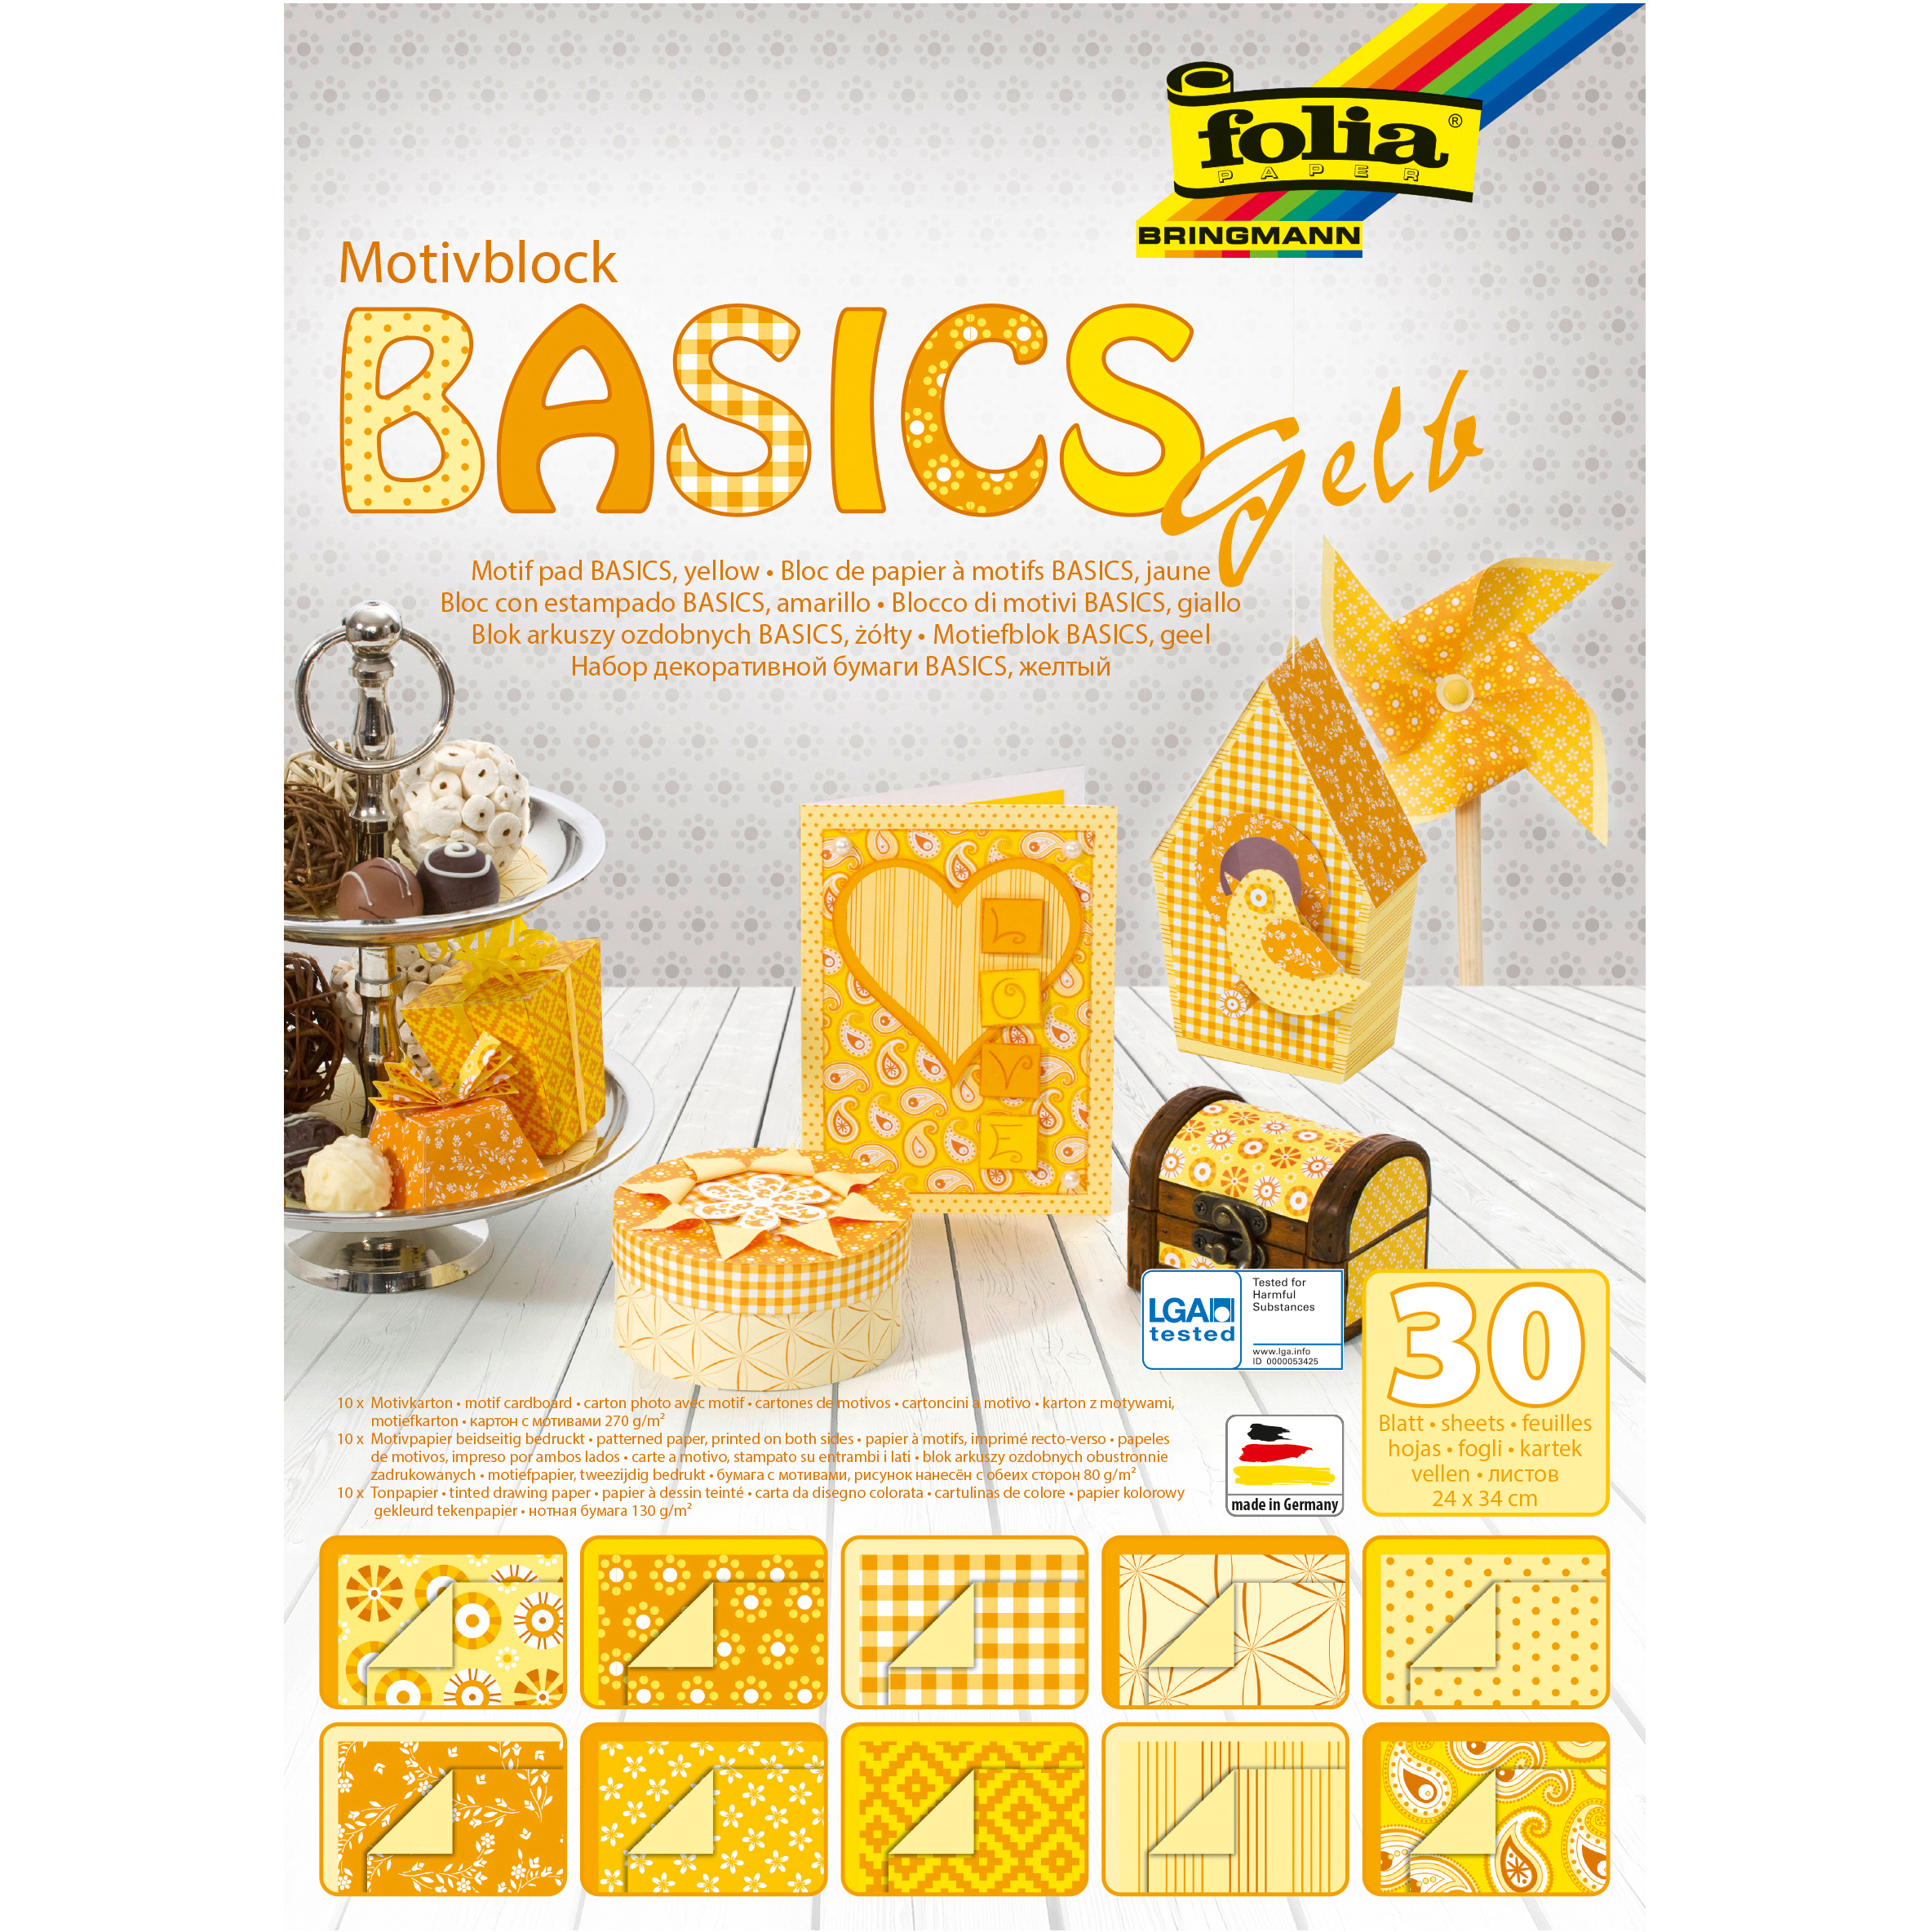 FOLIA Bloc de papier Basic 46149 àmotifs, jaune, 30 pcs.